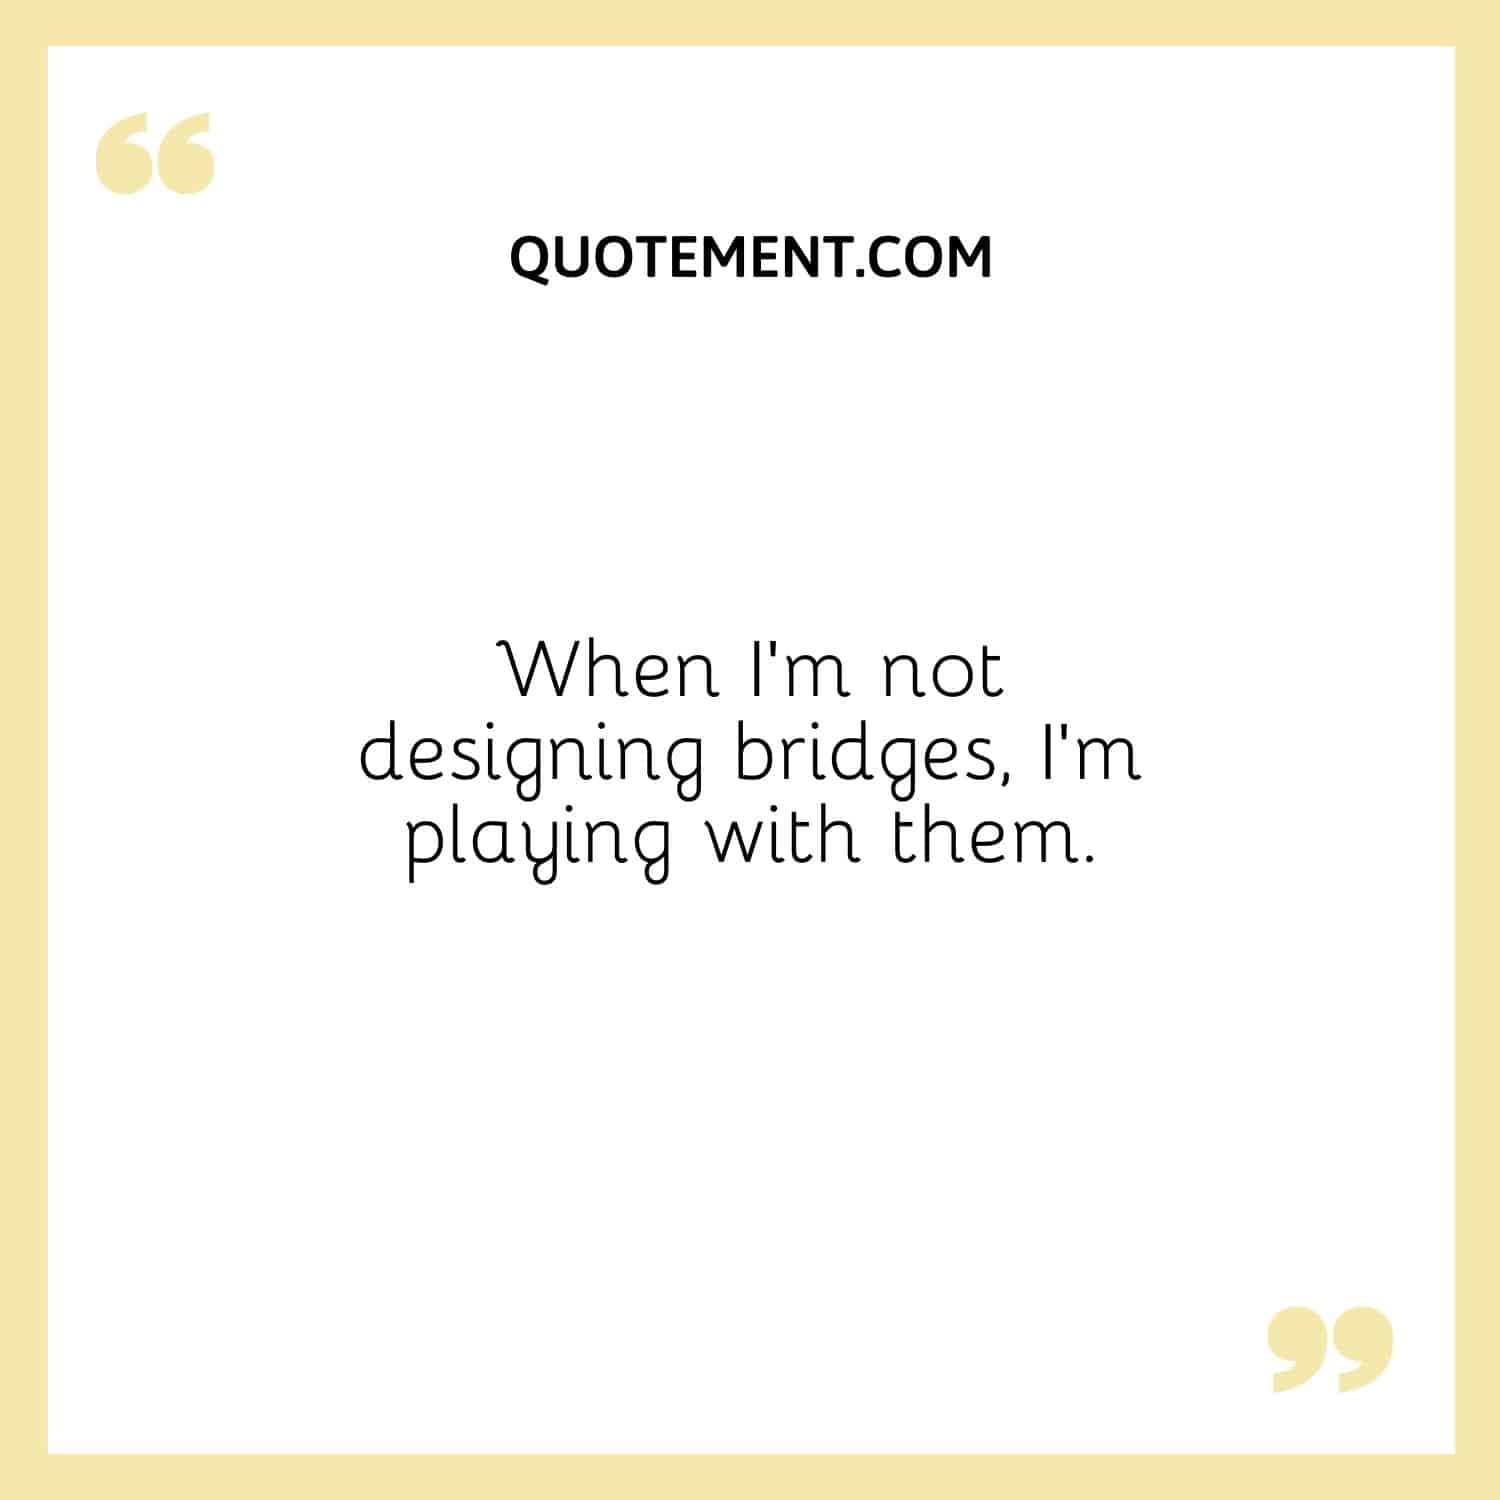 Cuando no diseño puentes, juego con ellos.